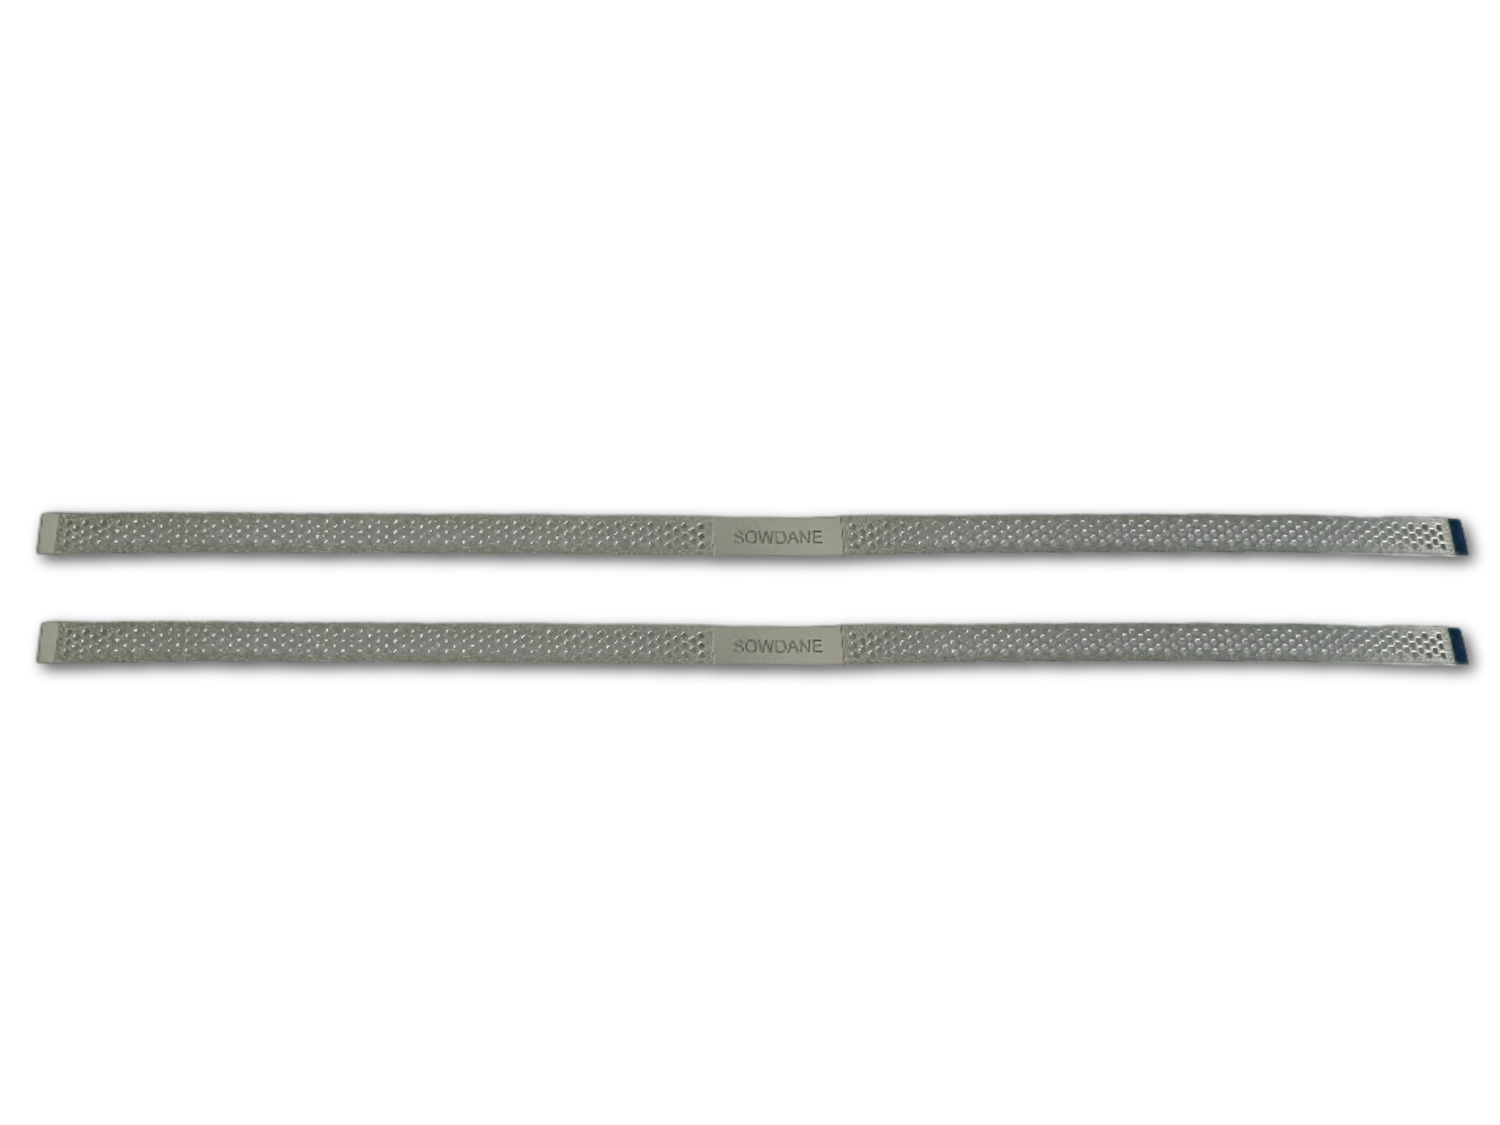 Diamantstreifen Strippstreifen mittelfein, einseitig, 15 cm lang, 4 mm breit, 10 Stck./Pack 